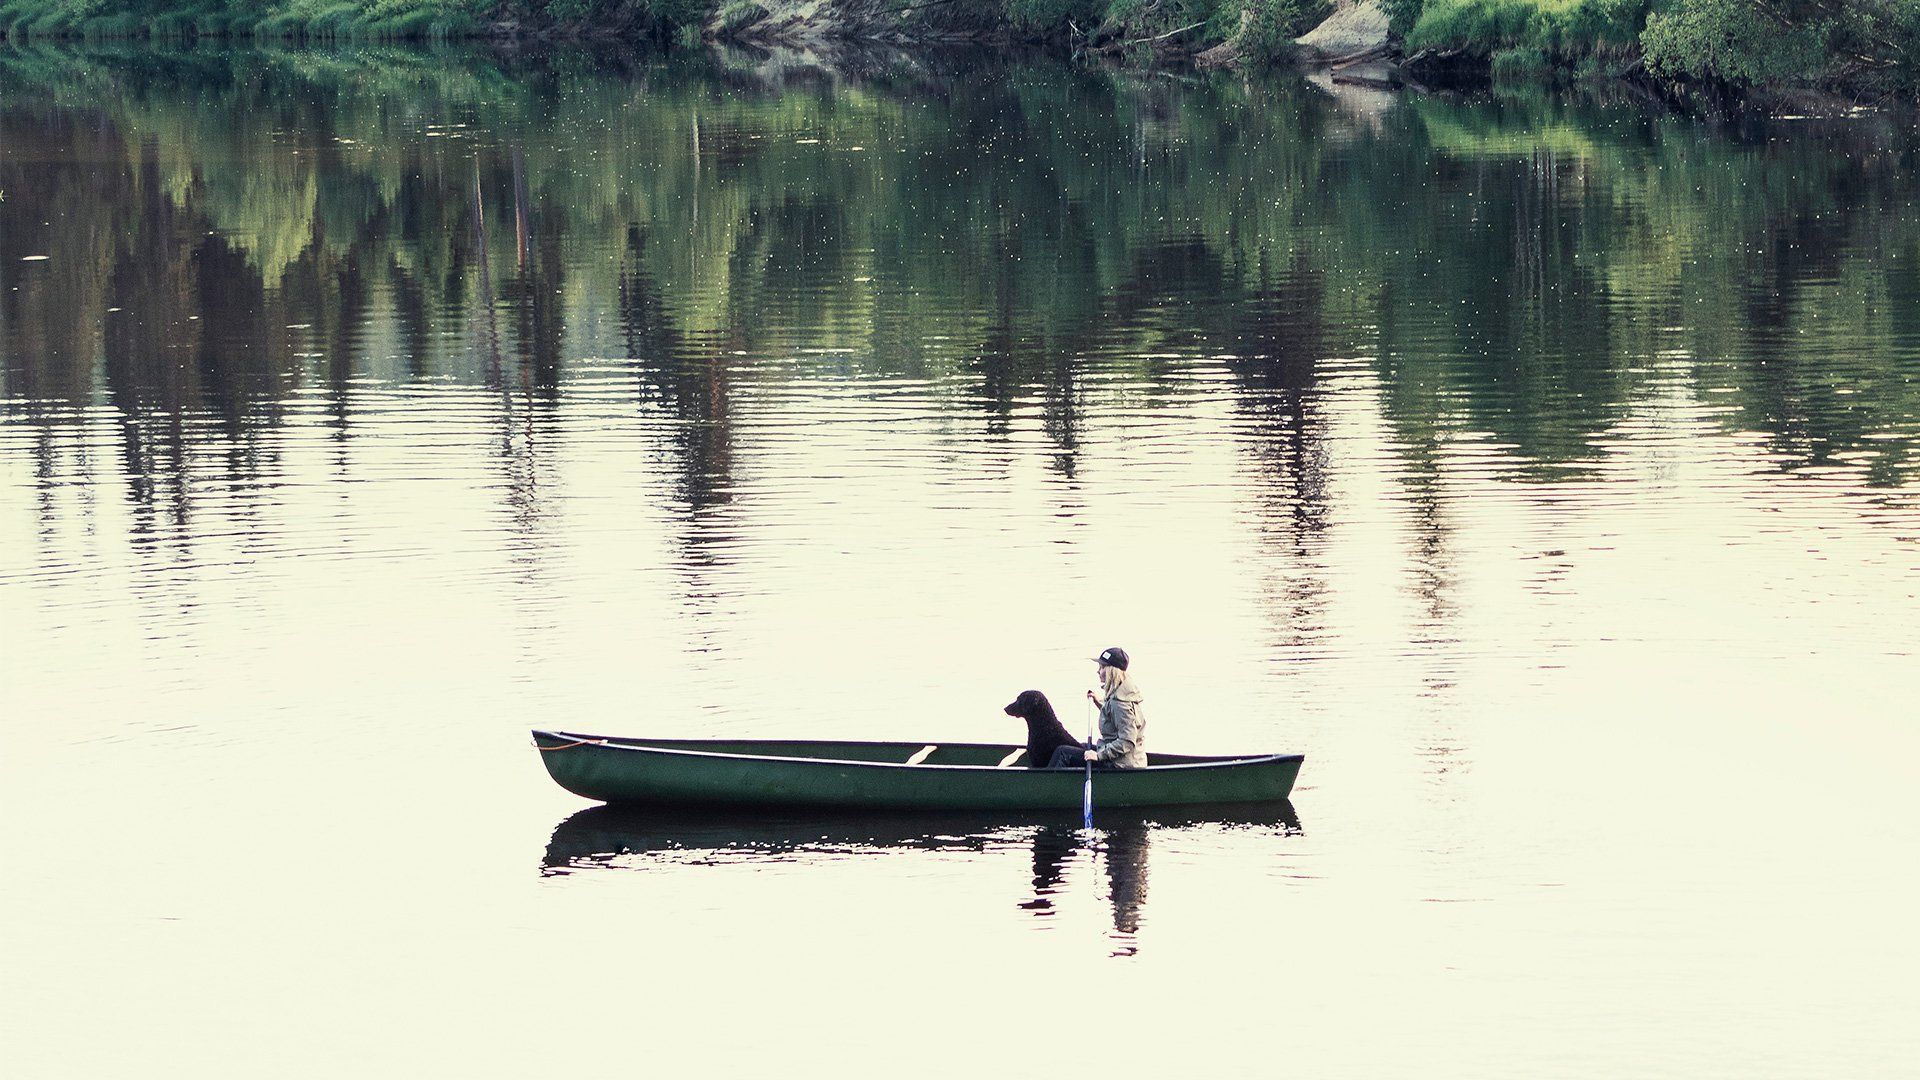  Maisemakuva Oulankajoelta, kanootti ja kaksi hahmoa